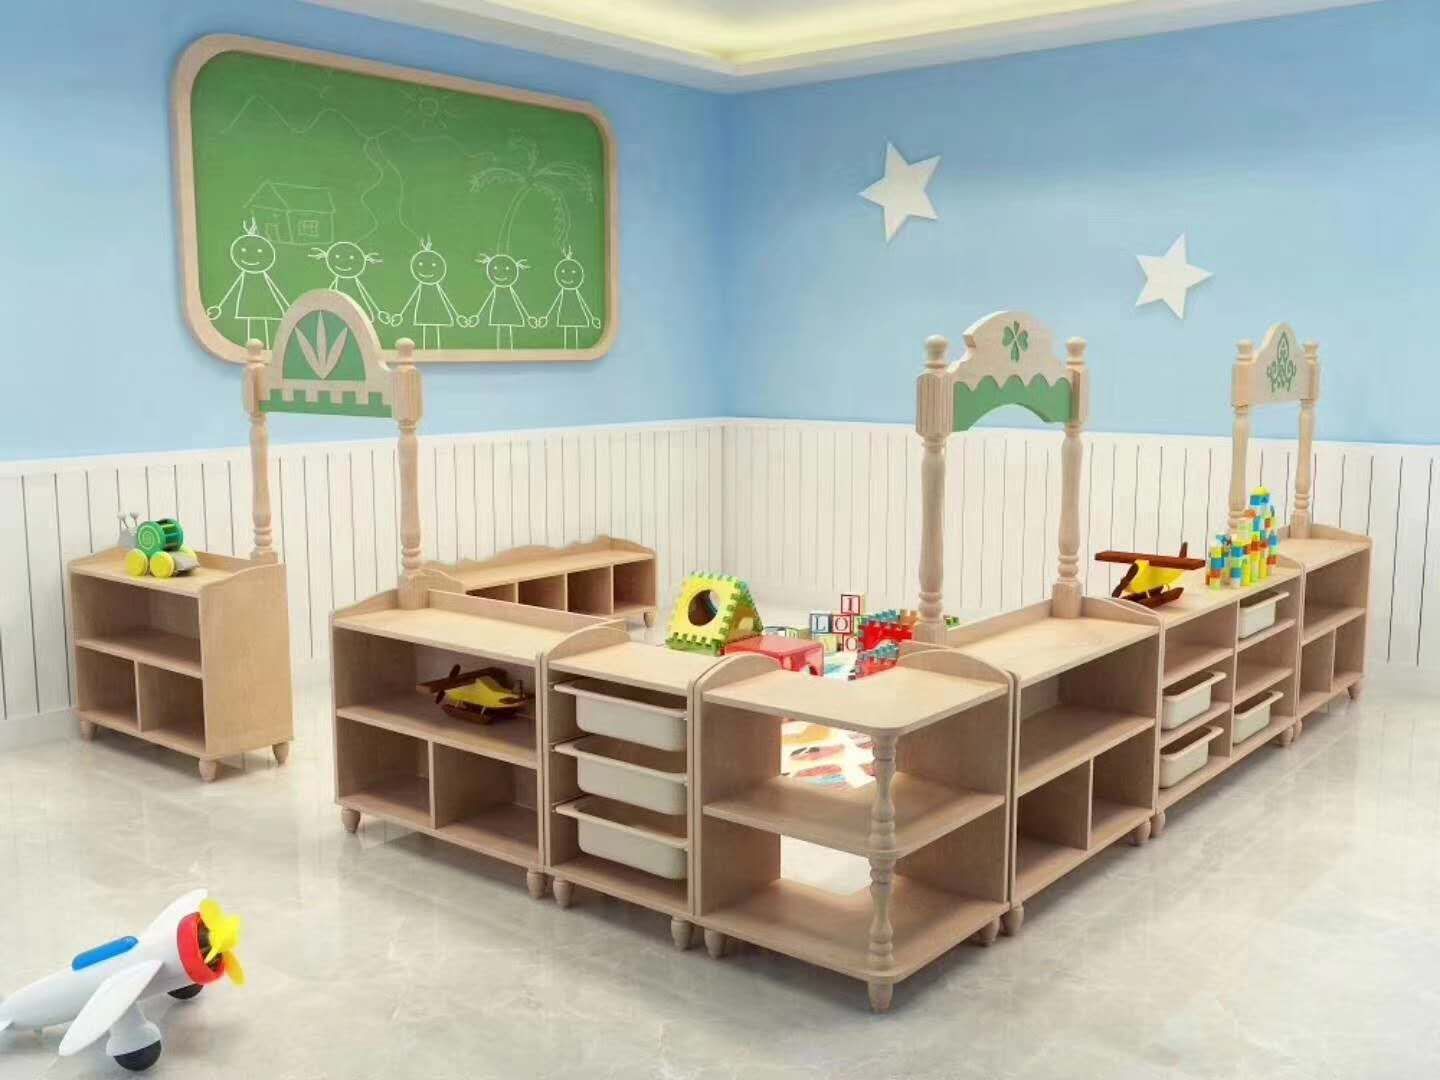 幼儿园木质家具区域活动组合柜